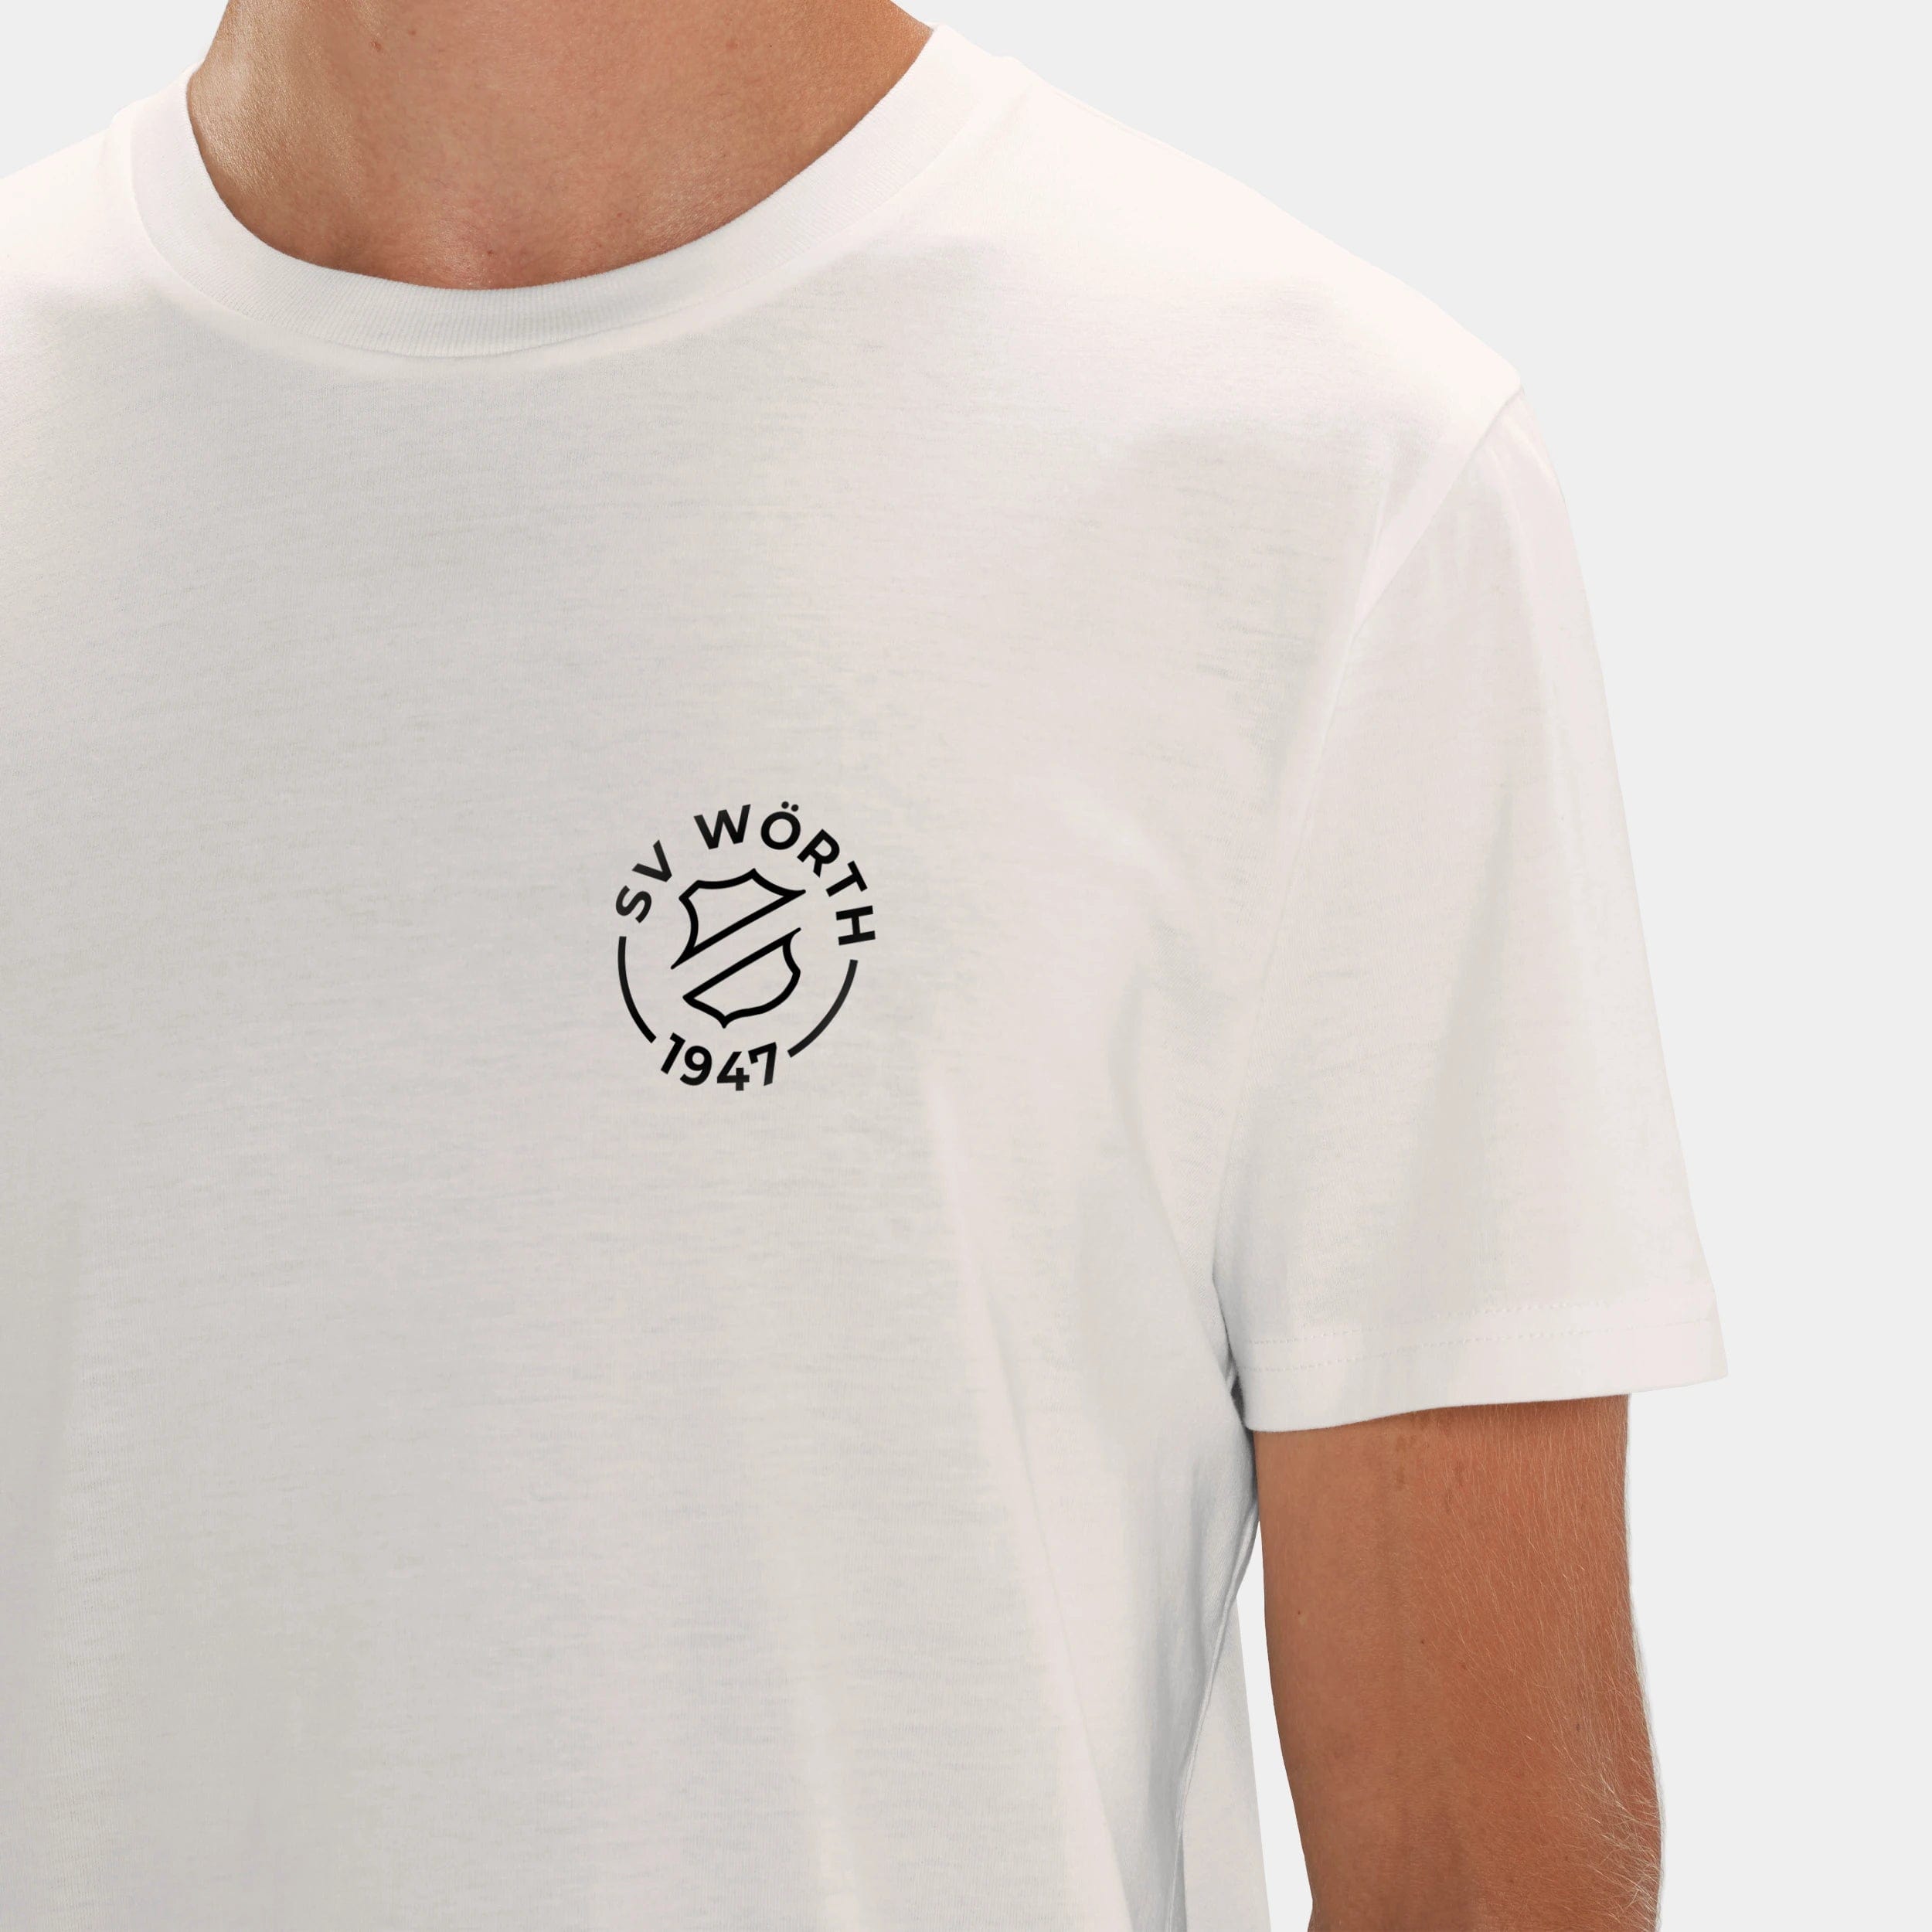 HEITER & LÄSSIG T-Shirt "SV Wörth" XXS / off-white - aus nachhaltiger und fairer Produktion